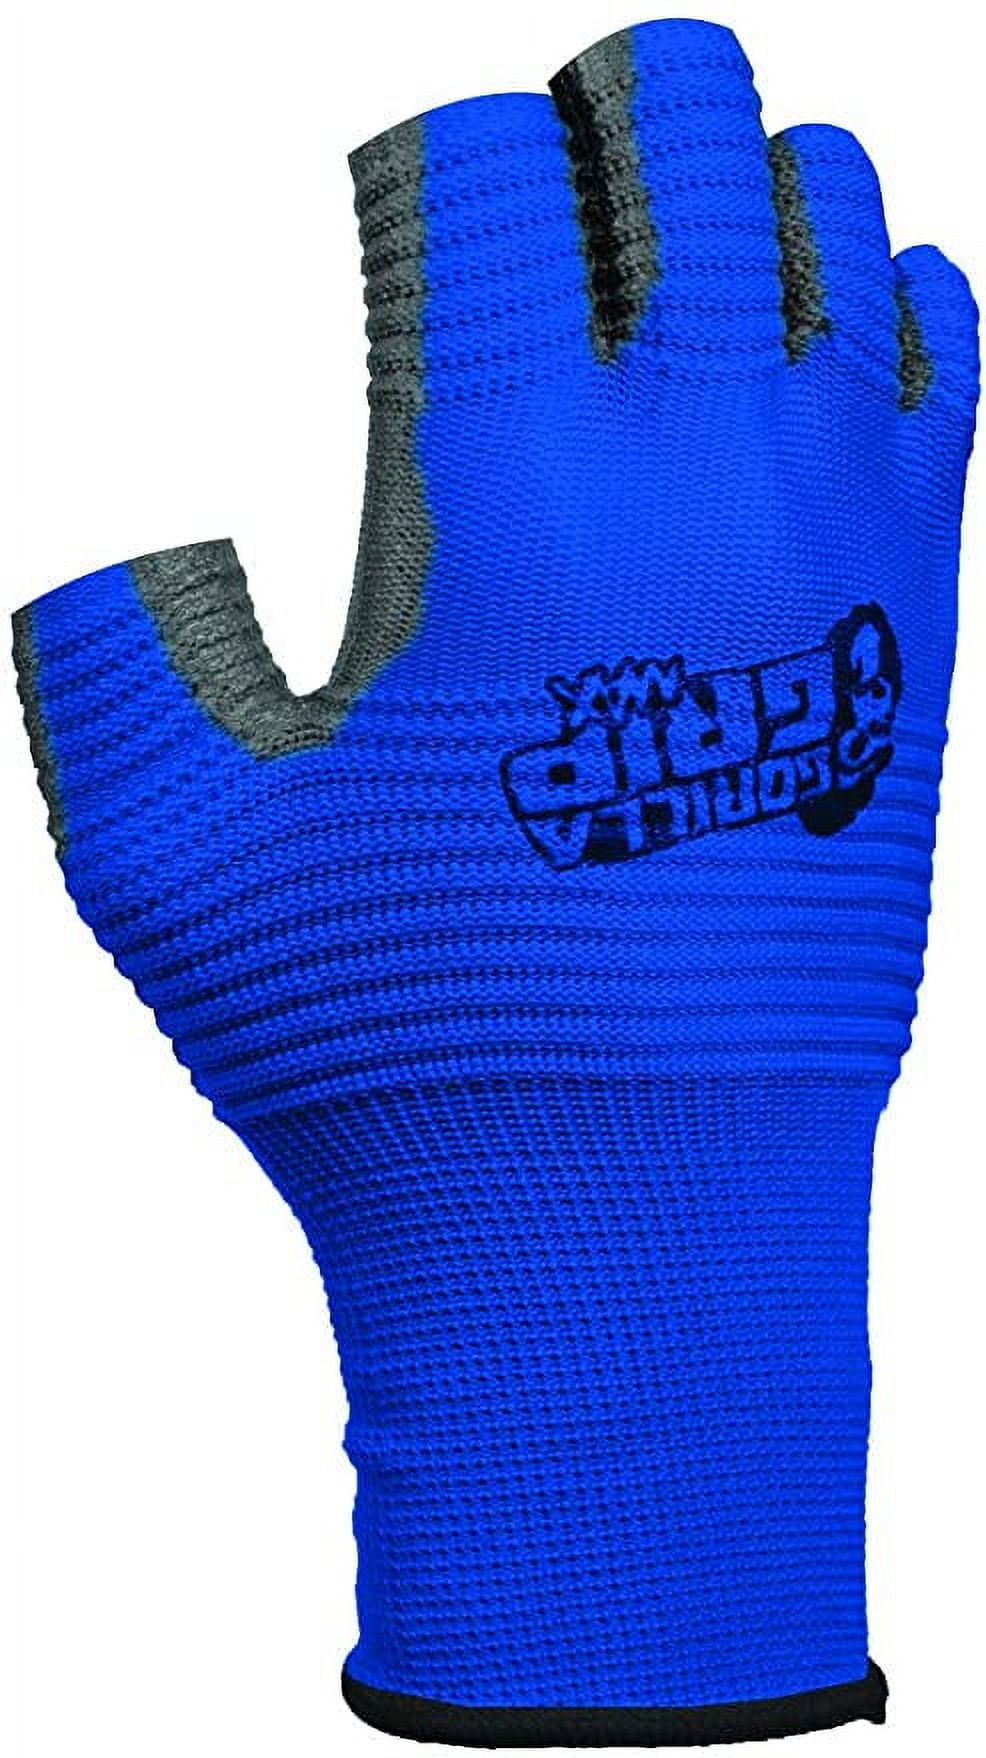 Gorilla Grip A5 Protection Gloves (XL) (25893-26)